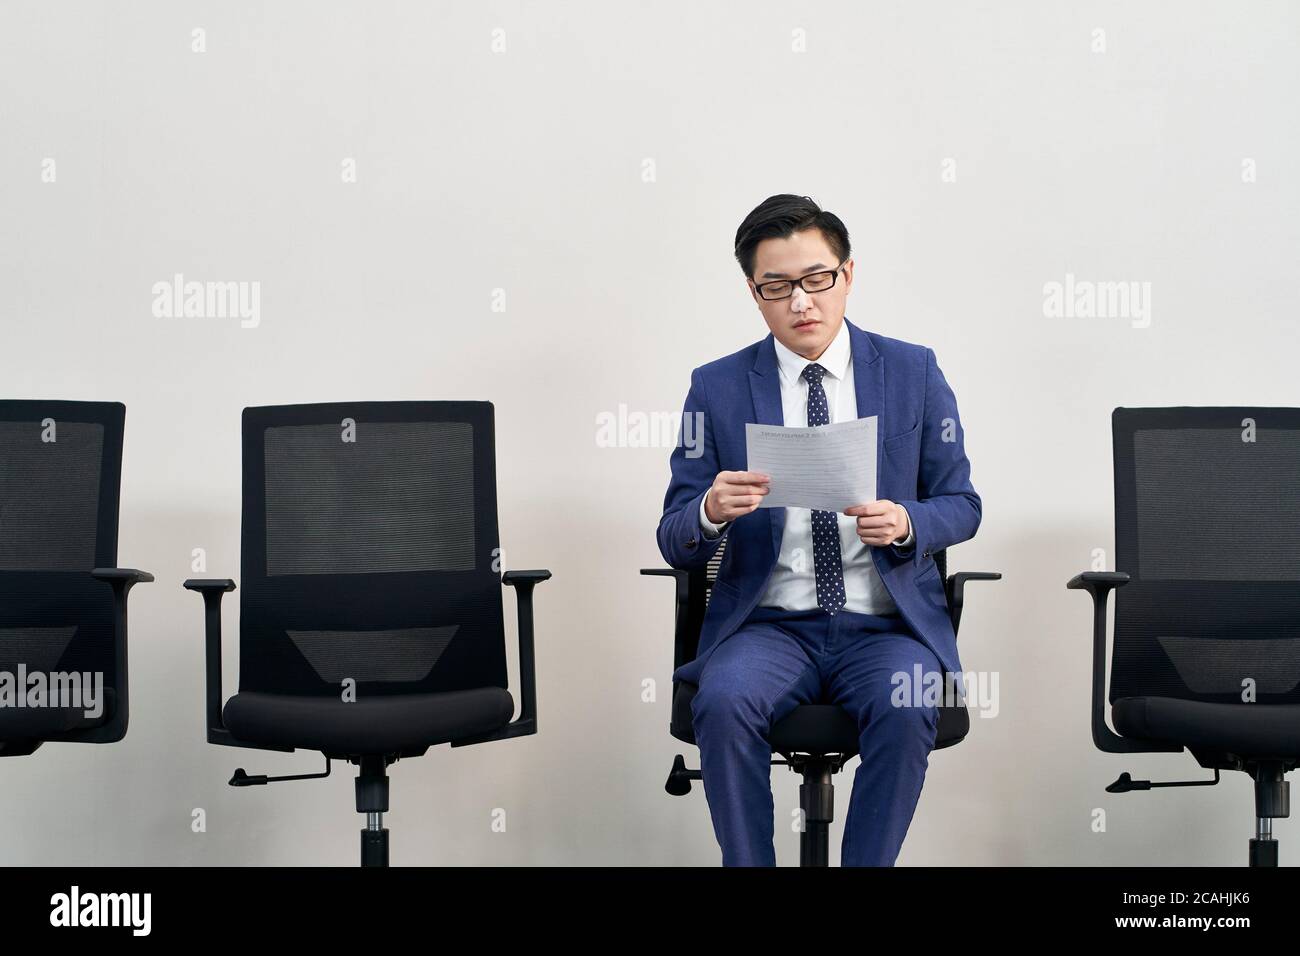 jeune asiatique homme candidat à l'emploi se préparant à l'entrevue tout en attendant dans la file d'attente Banque D'Images